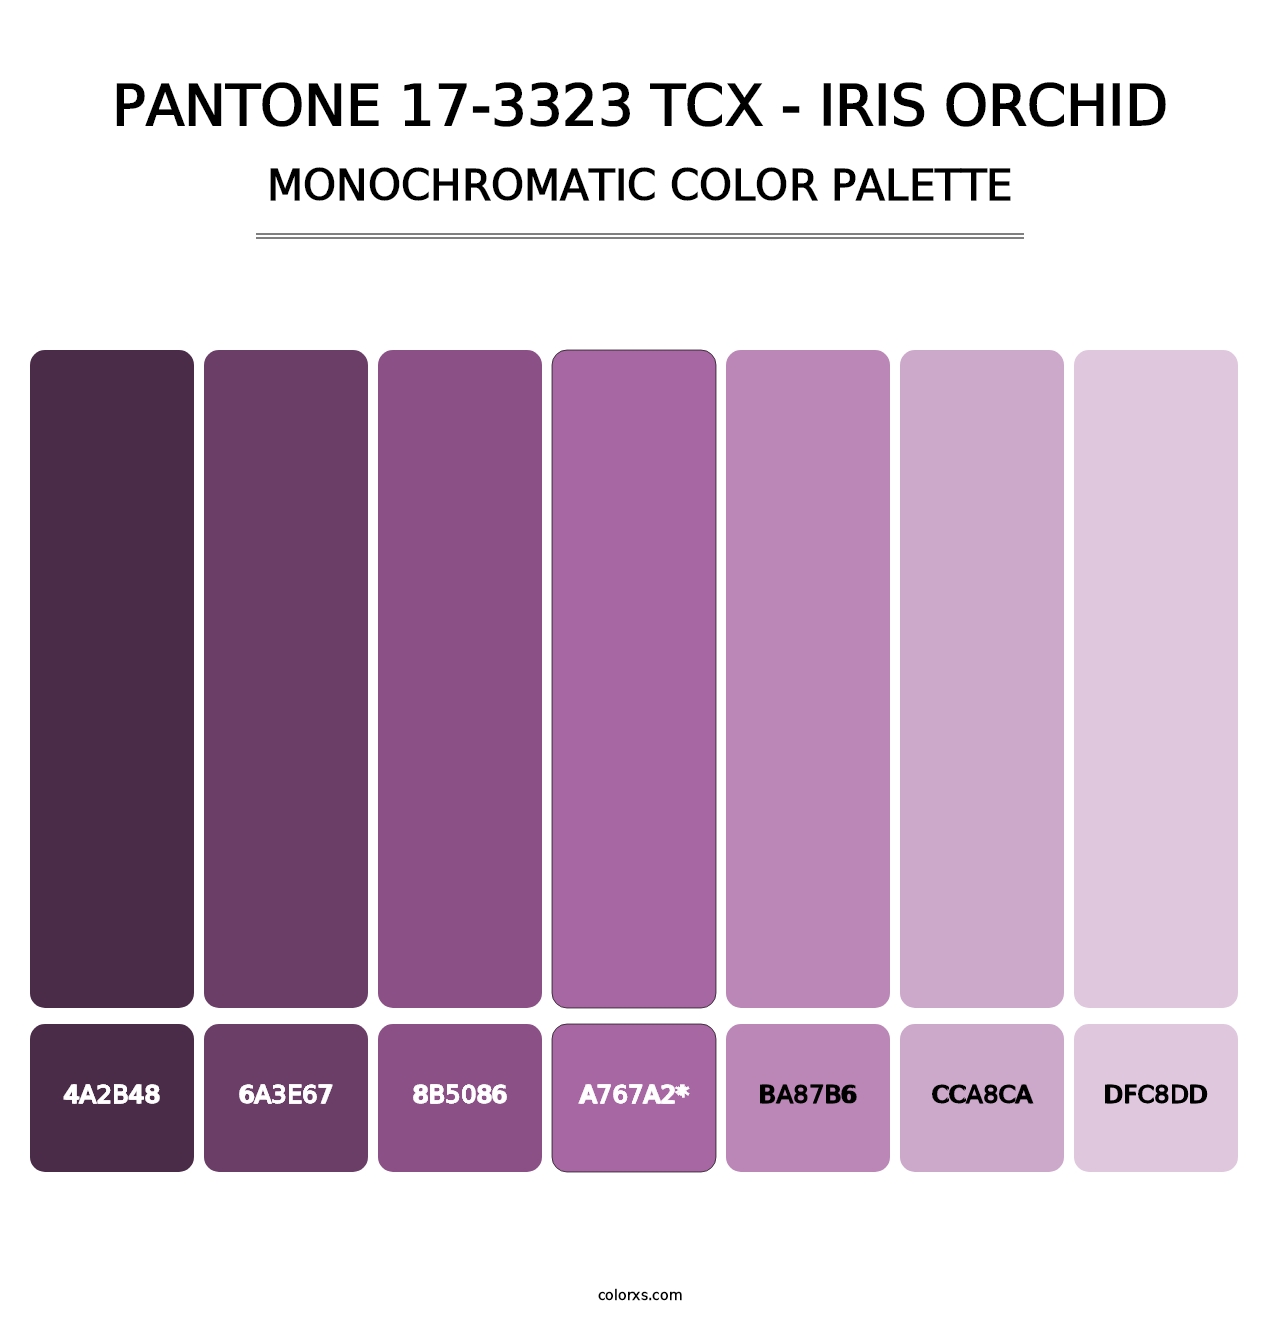 PANTONE 17-3323 TCX - Iris Orchid - Monochromatic Color Palette